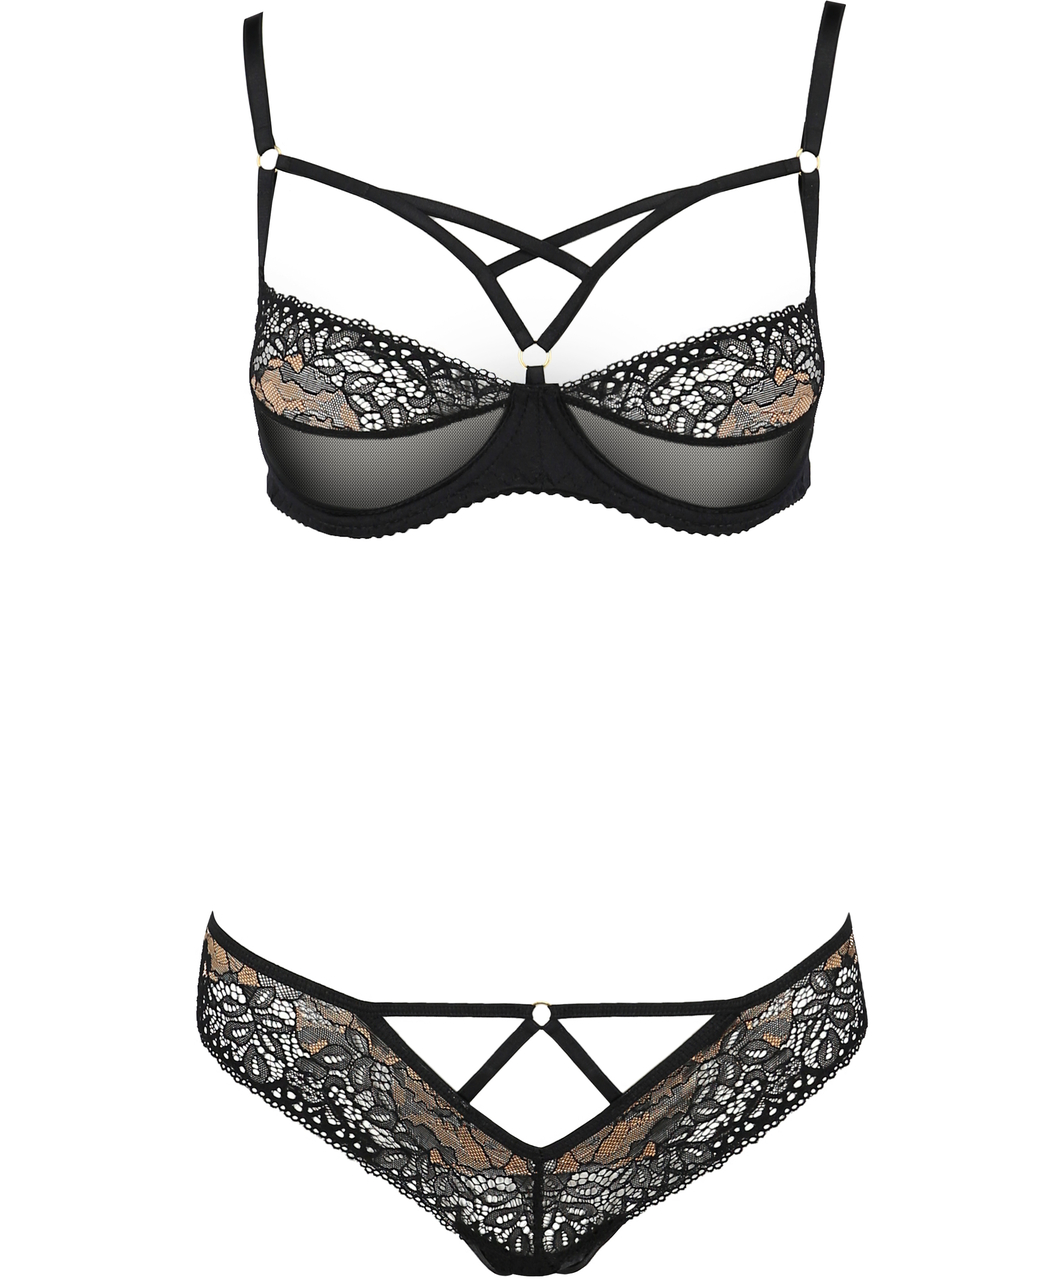 Casmir Divine black lace & mesh lingerie set